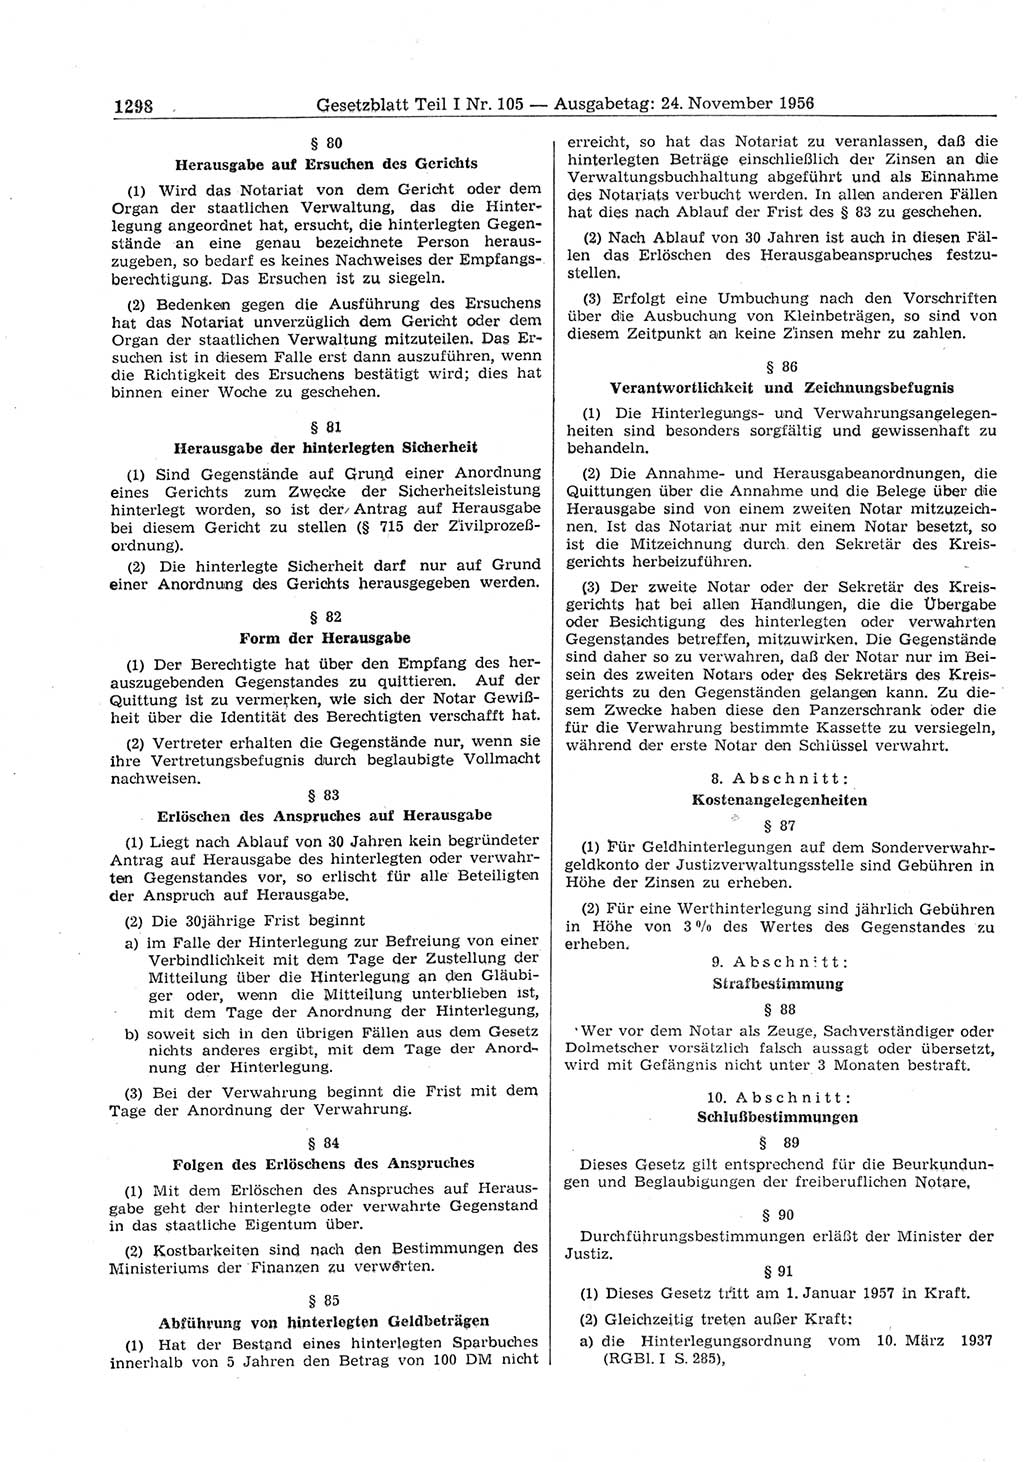 Gesetzblatt (GBl.) der Deutschen Demokratischen Republik (DDR) Teil Ⅰ 1956, Seite 1298 (GBl. DDR Ⅰ 1956, S. 1298)